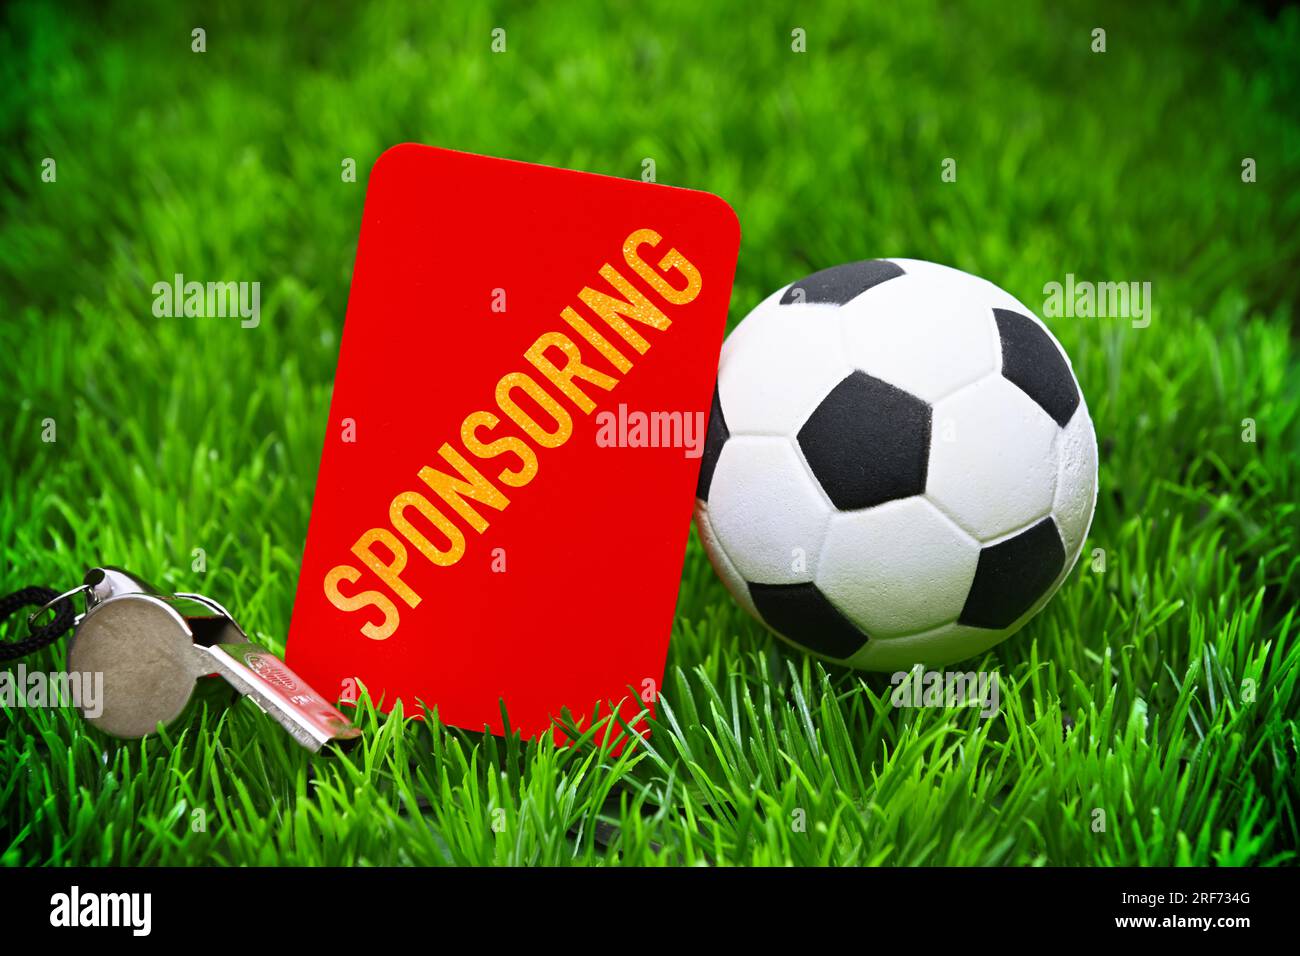 FOTOMONTAGE, Rote Karte mit Aufschrift Sponsoring neben Fußball auf Fußballrasen, Symbolfoto Kündigung von Sponsoring-Verträgen Stock Photo